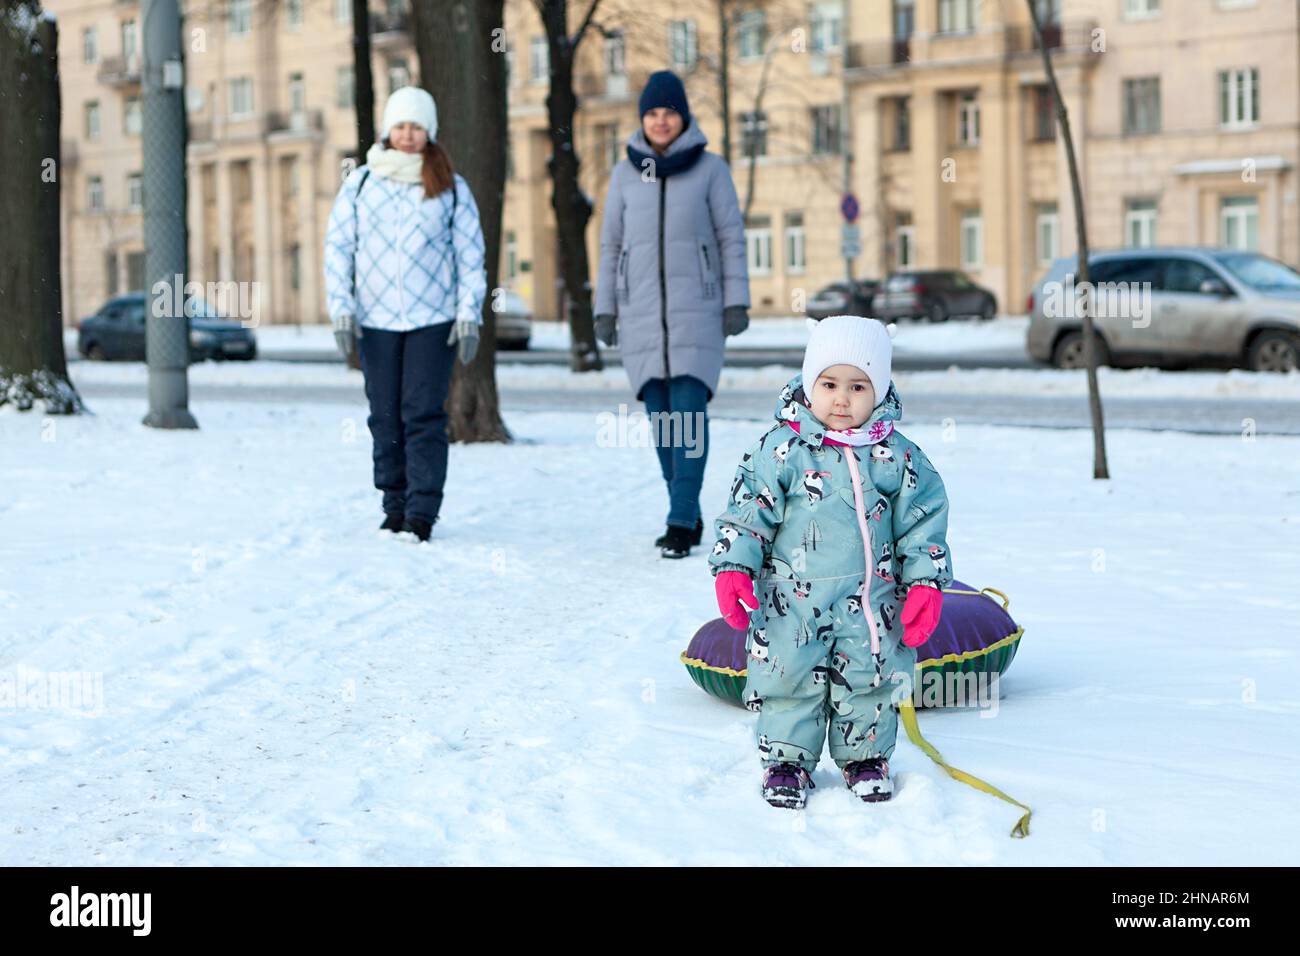 Zwei junge kaukasische Frauen mit einem kleinen Kind, die in der Wintersaison mit dem Schlauch spazieren gehen Stockfoto